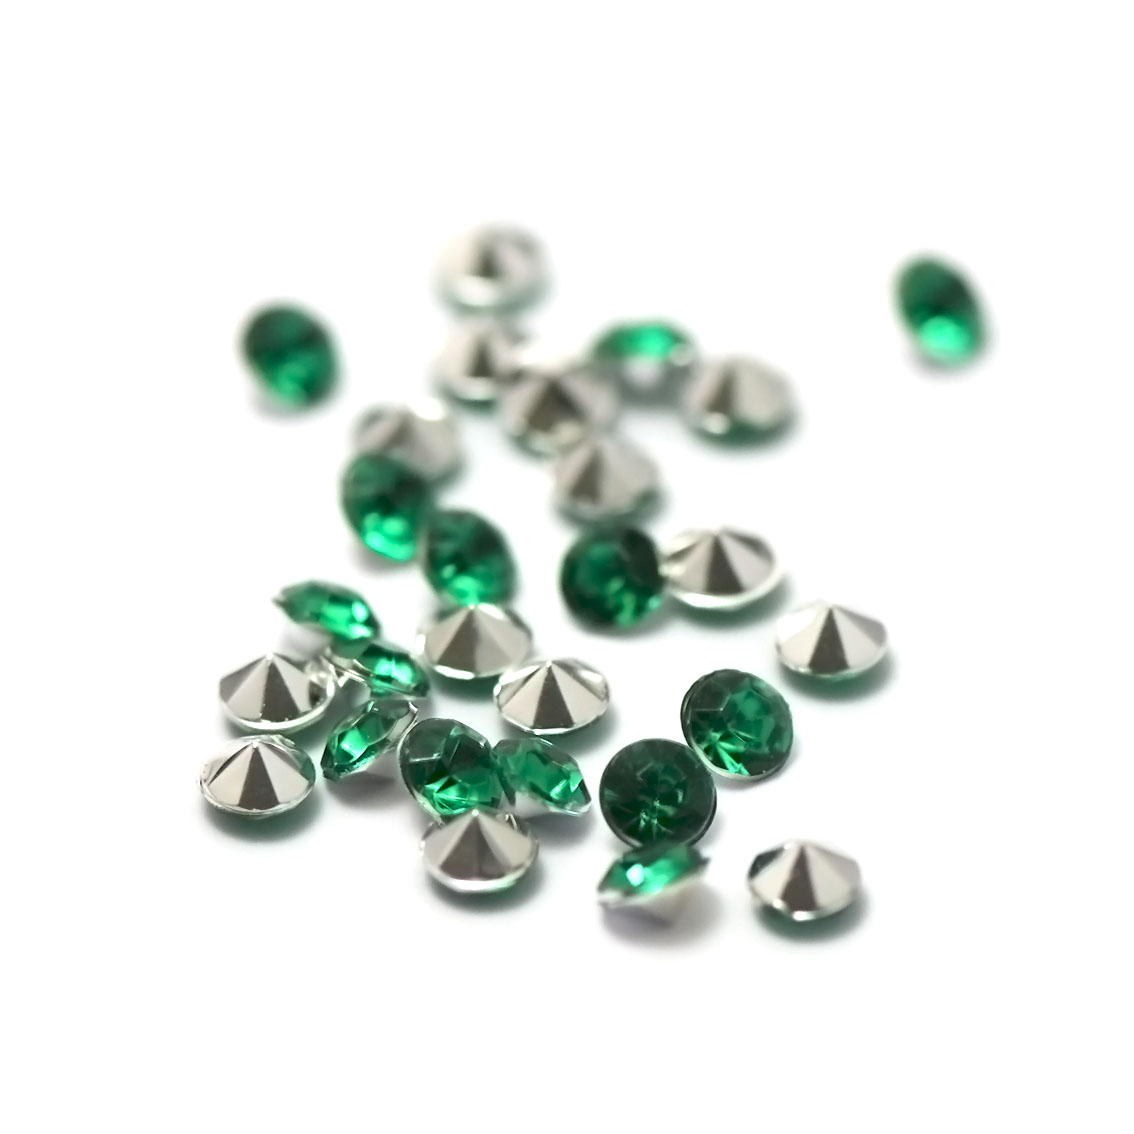 5g de perles strass en verre à coller cône 4 mm, vert émeraude